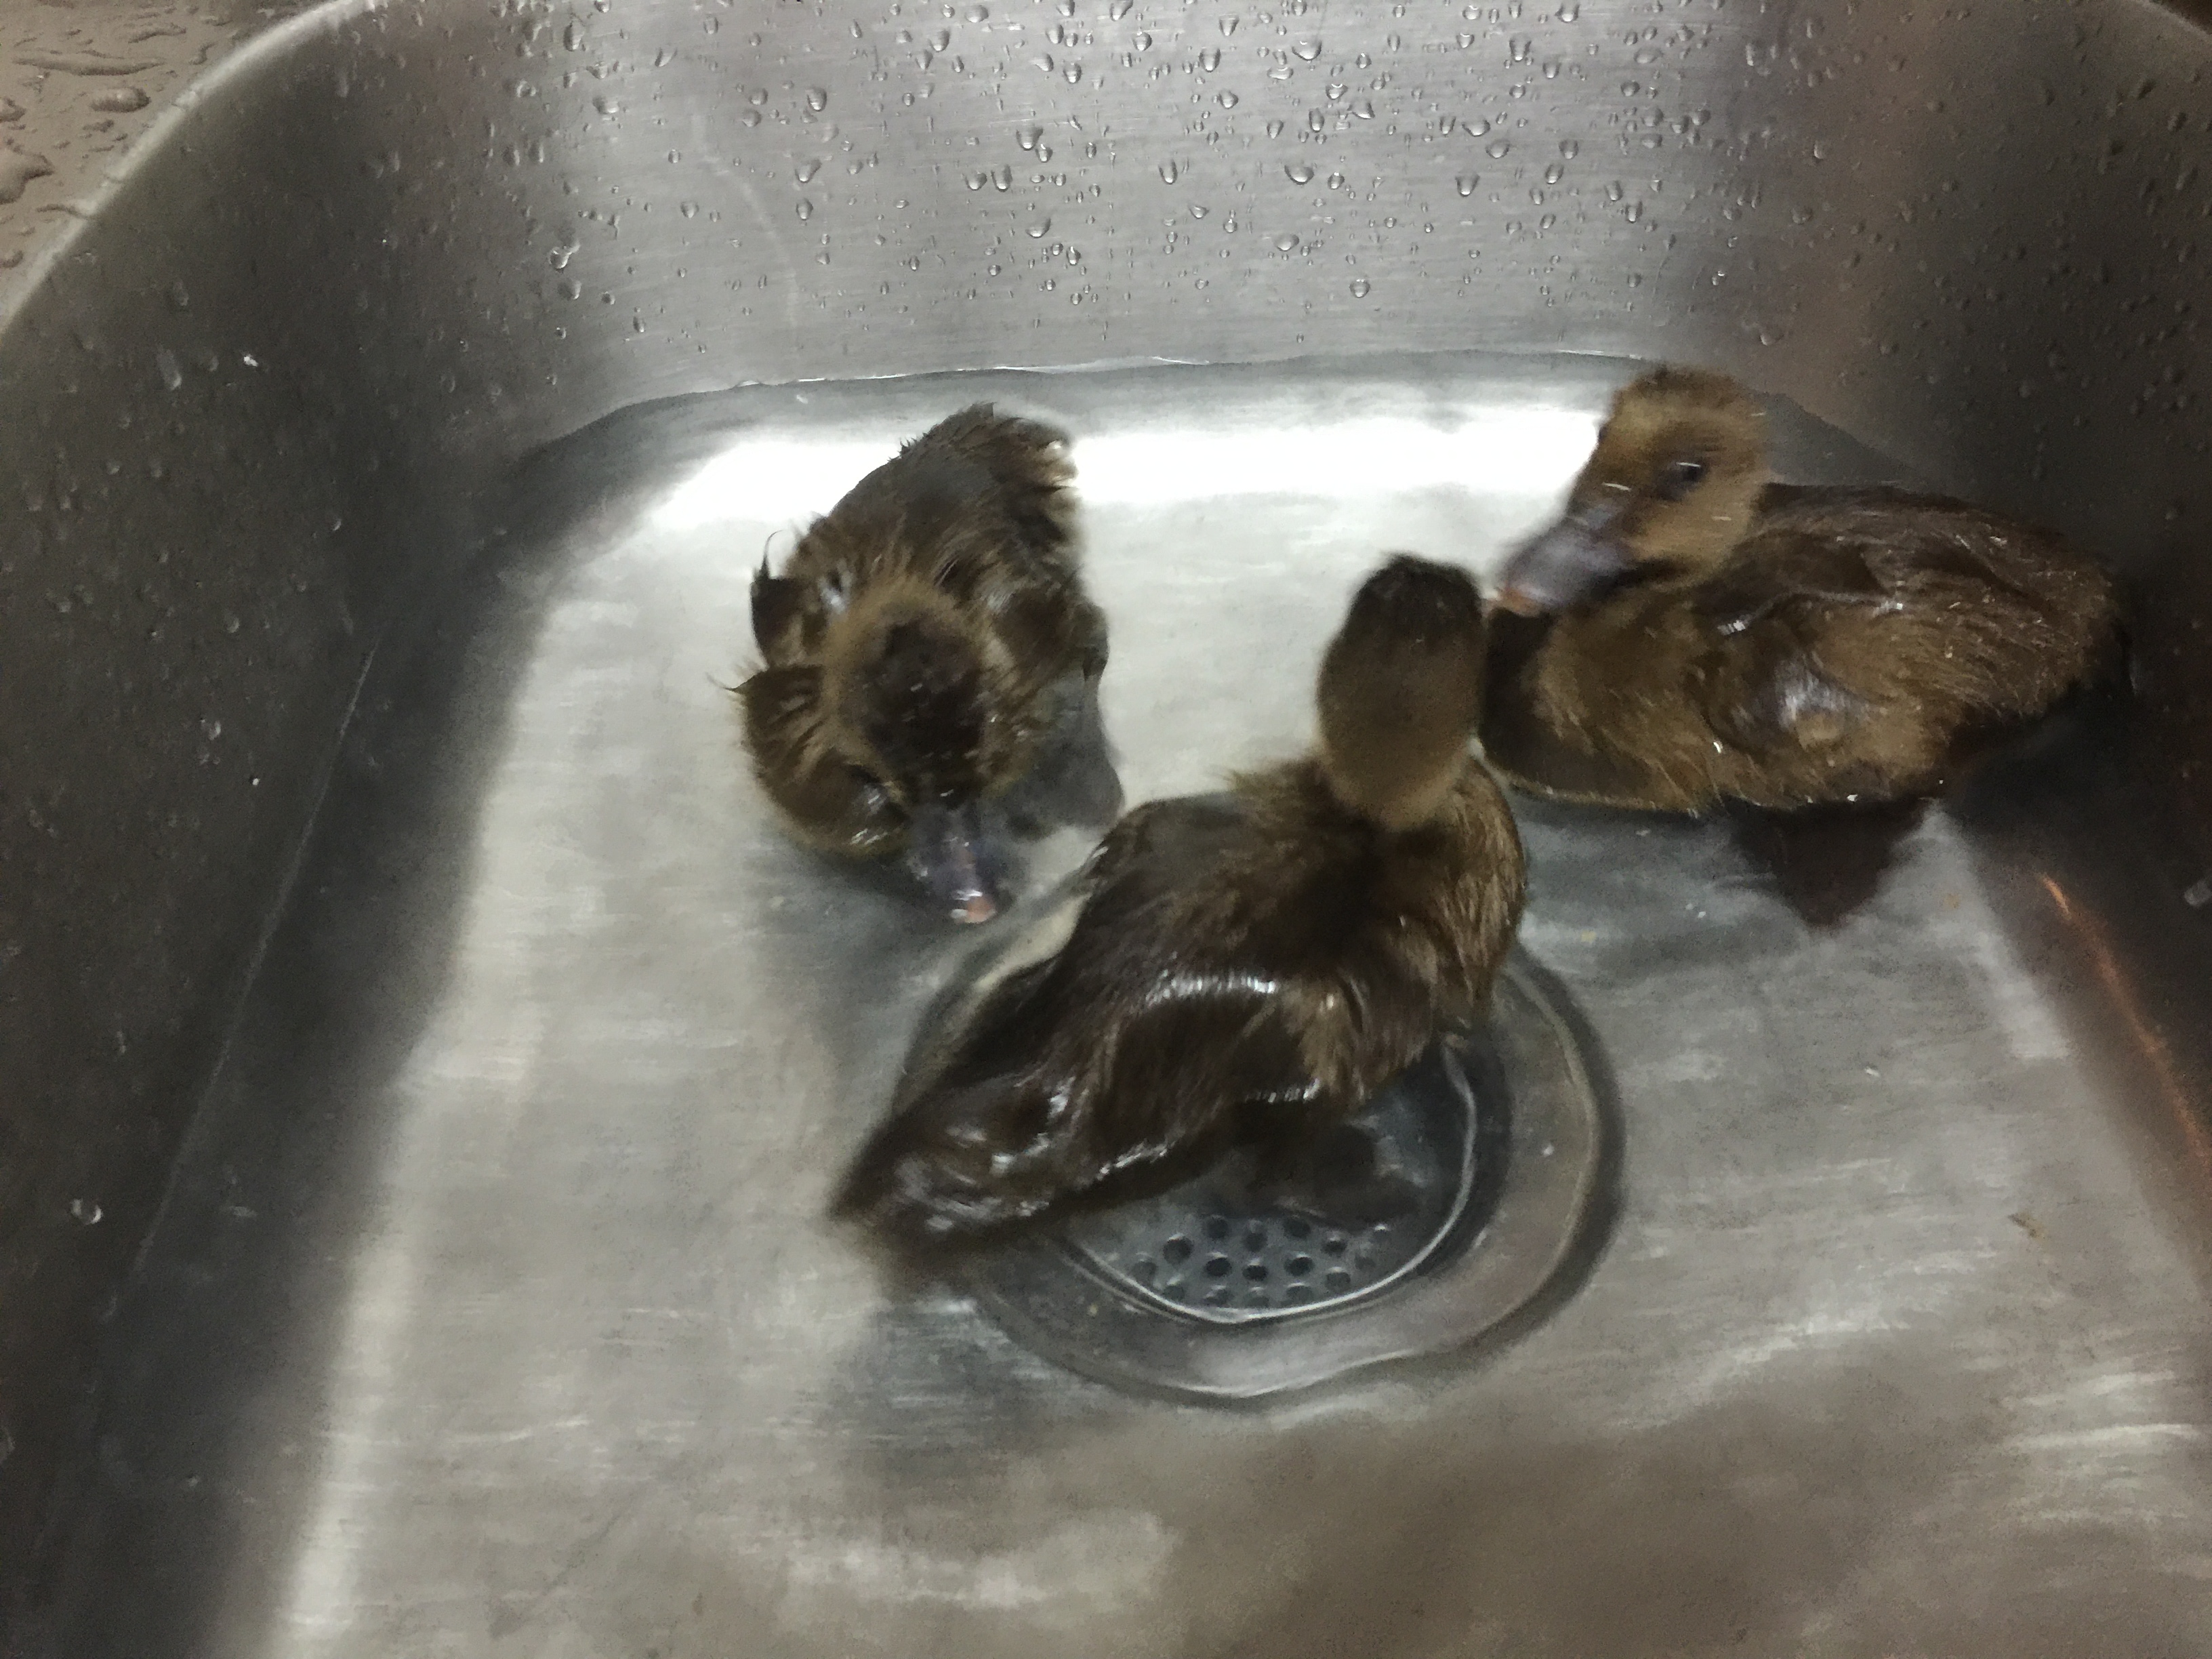 Our 3 Khaki Campbell ducks getting a bath :)